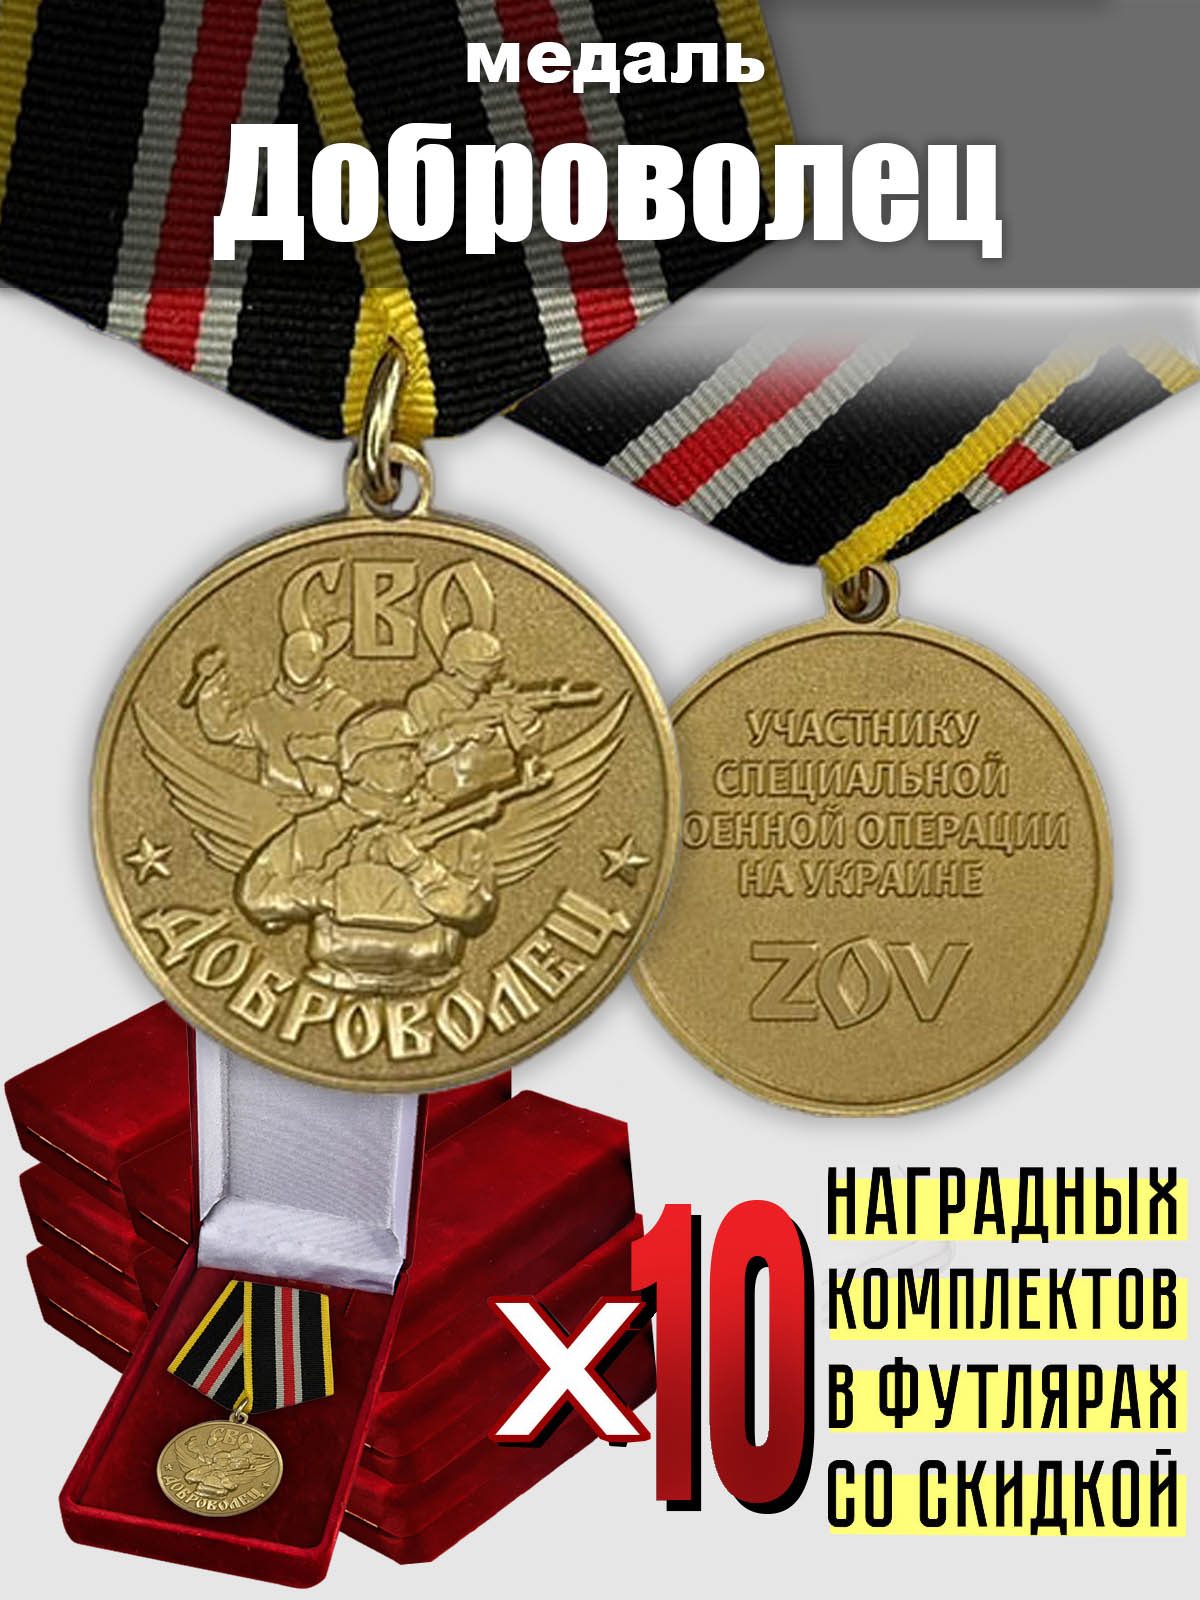 Медали СВО для награждения добровольцев (10 шт.)